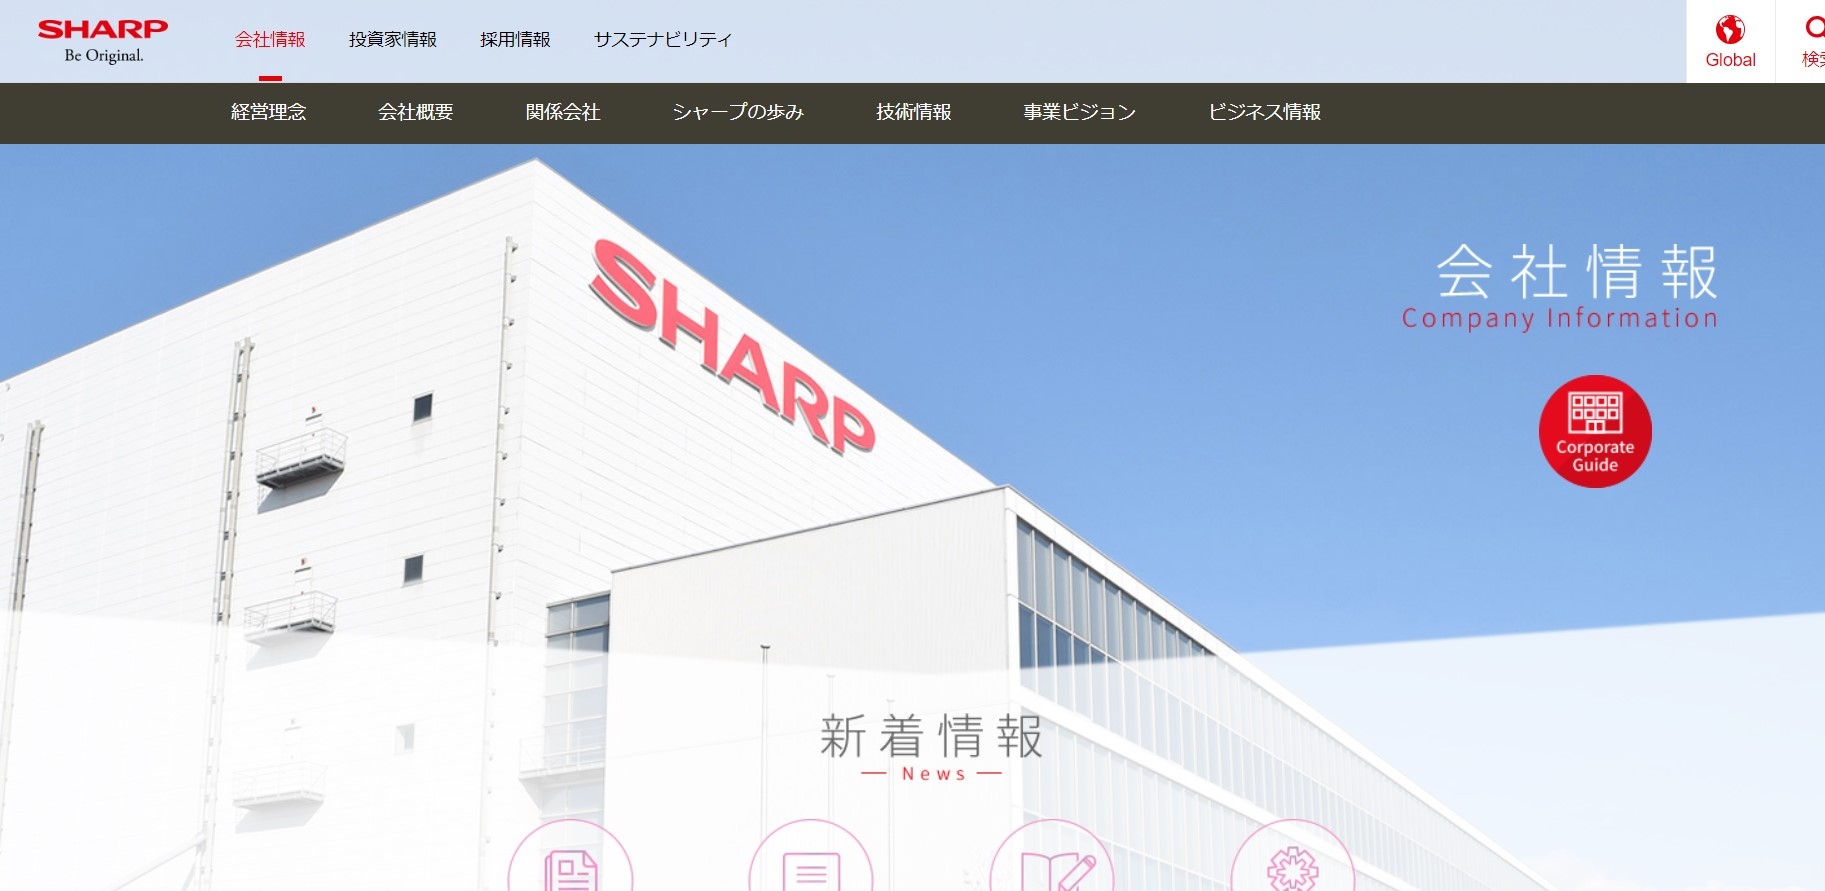 LCD TV 패널 일본 생산 중단하는 샤프